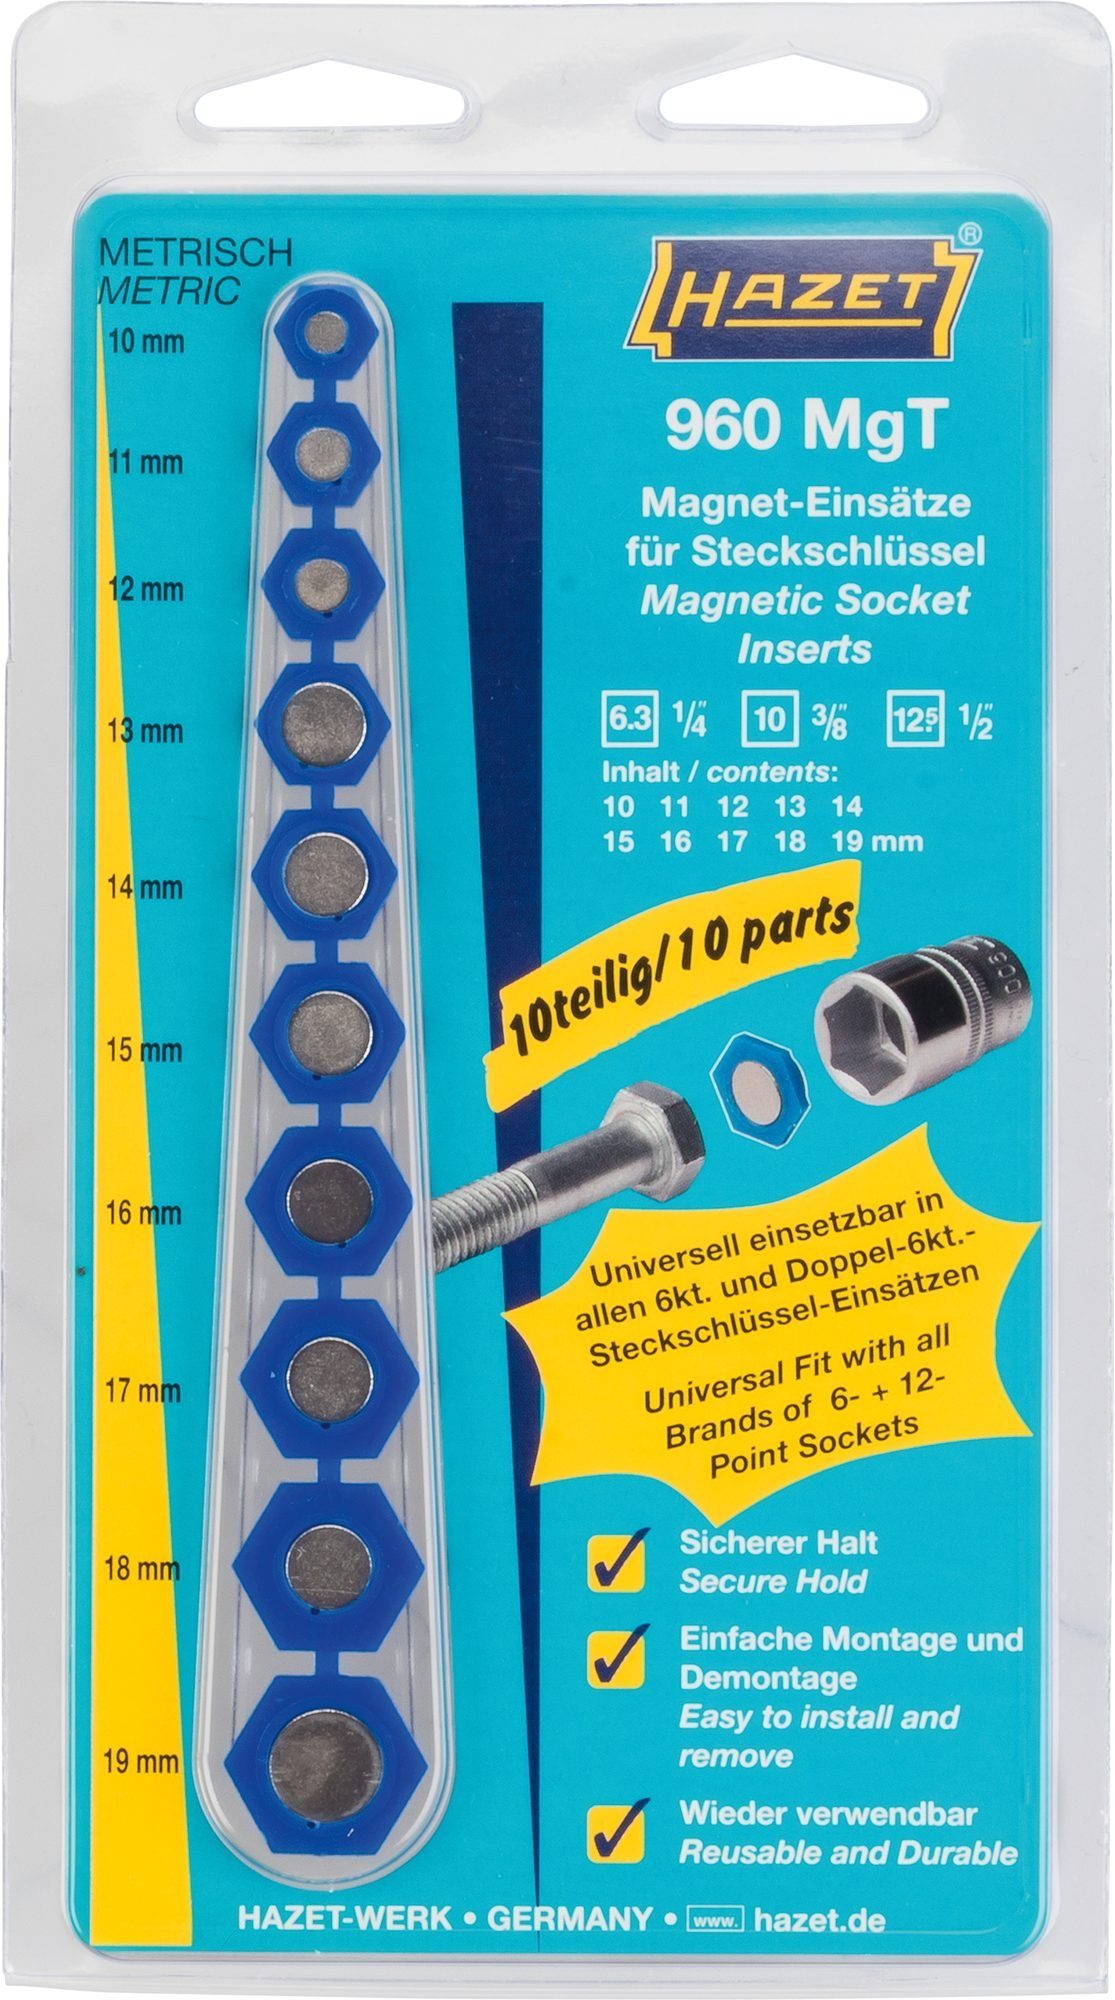 HAZET 960MGT Steckschlüssel Magnet-Einsatz Hazet für Steckschlüssel,